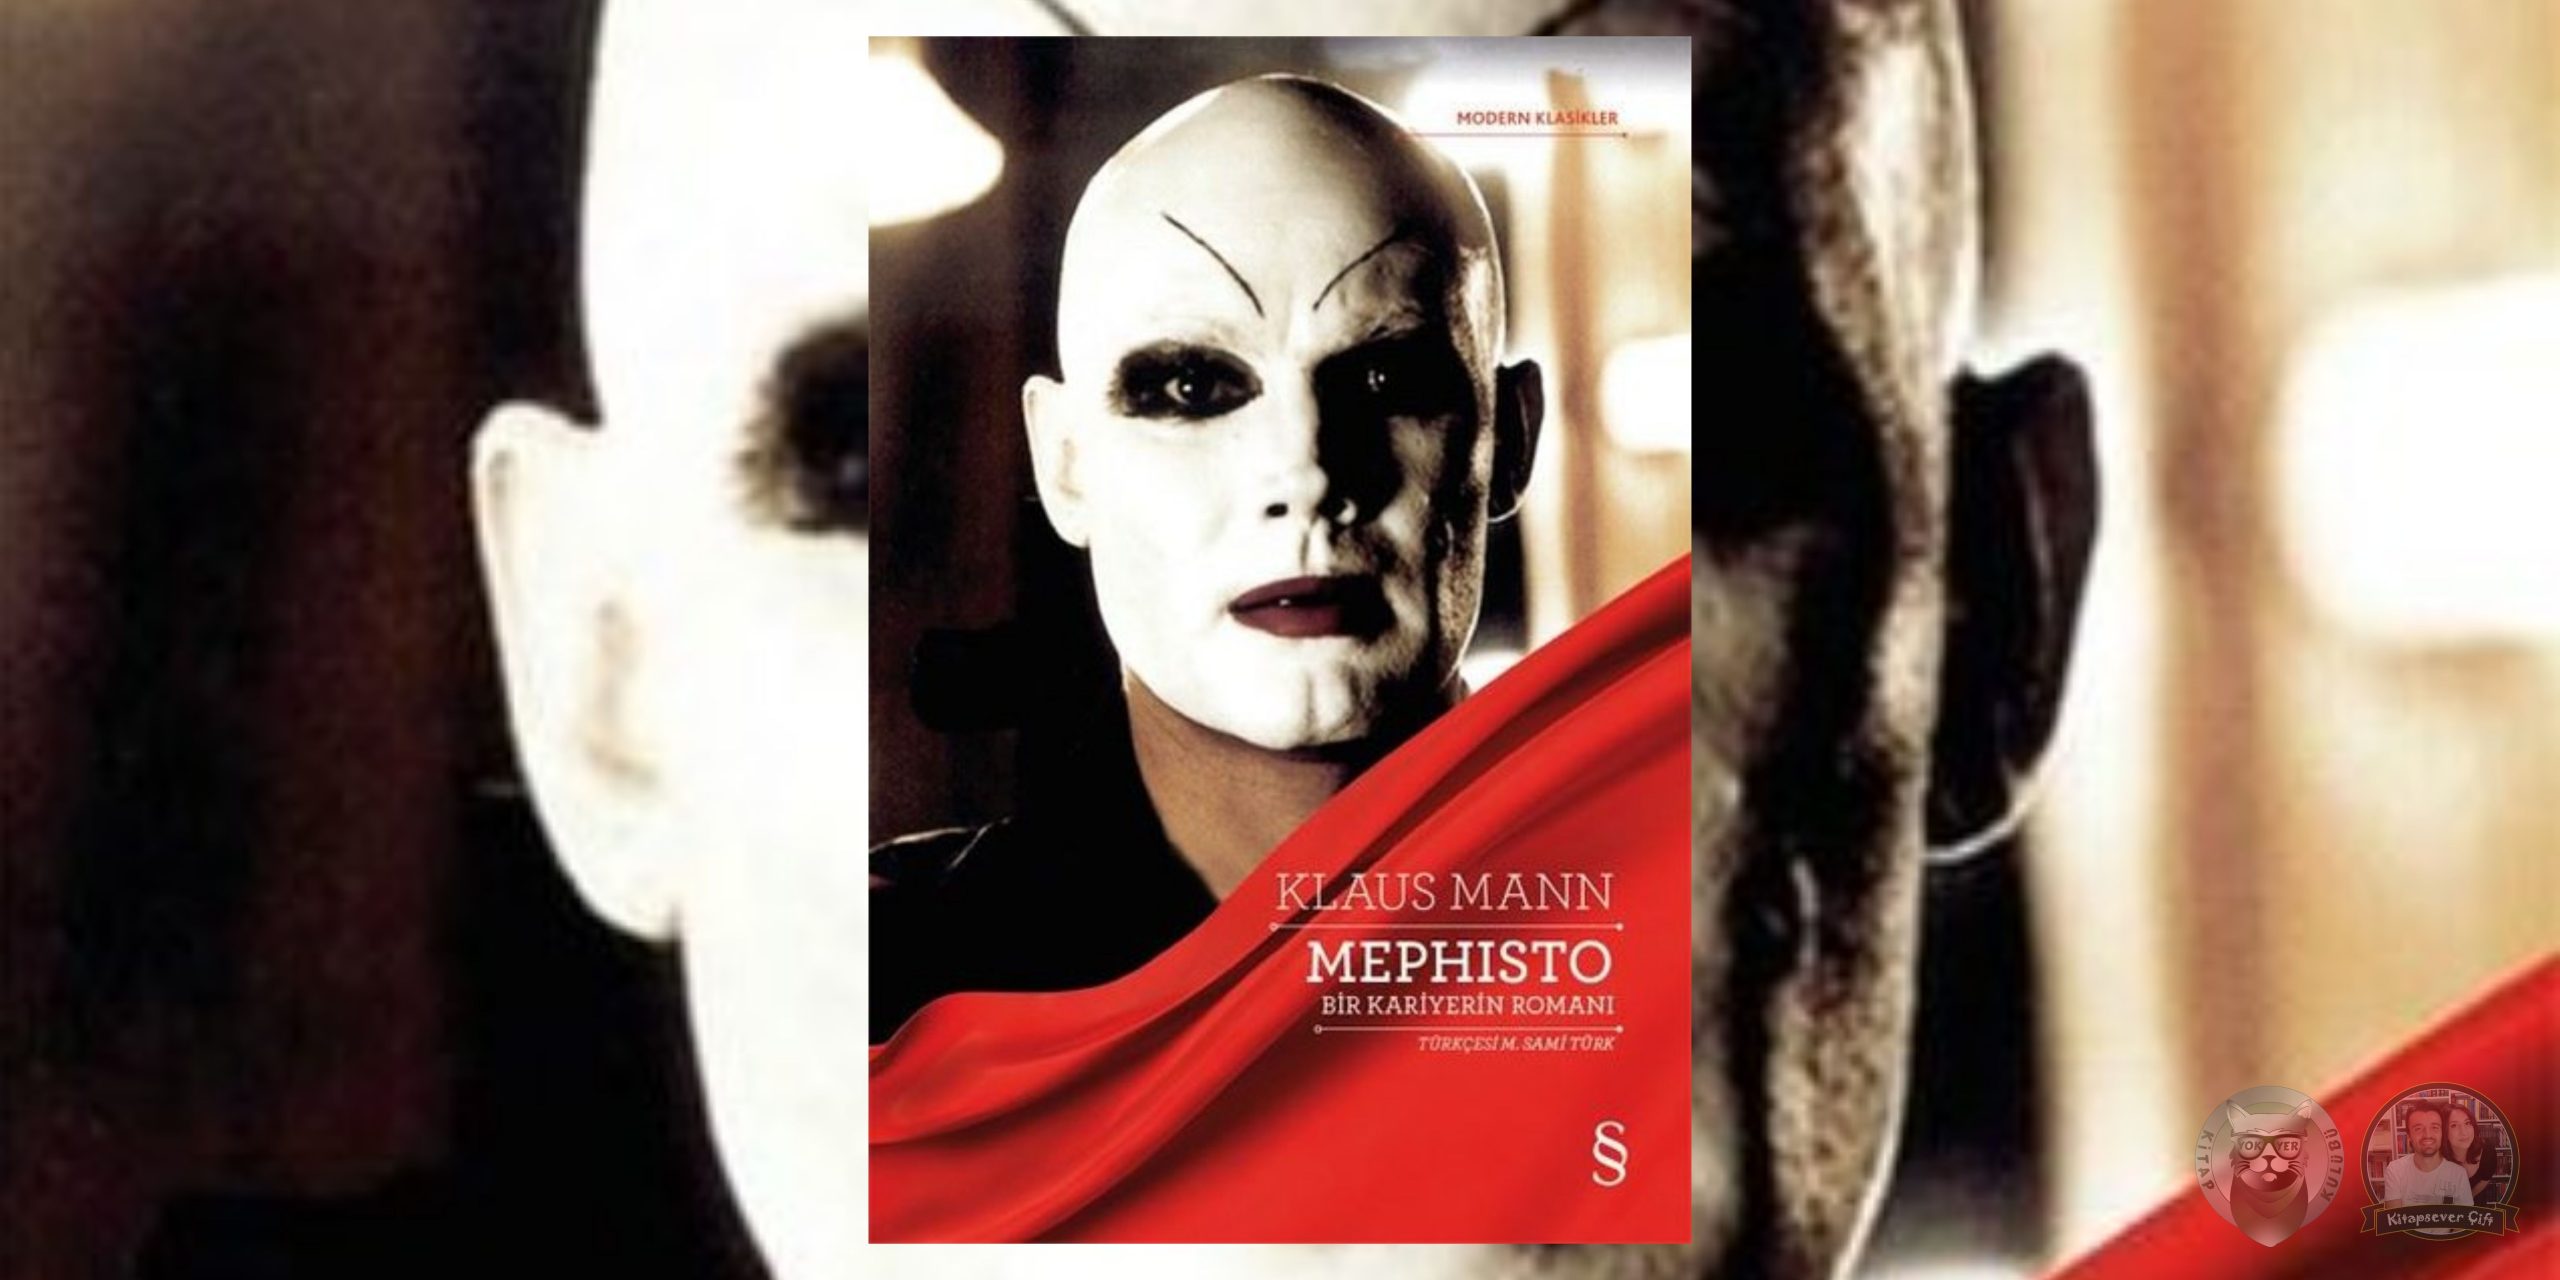 mephisto-bir kariyerin romanı